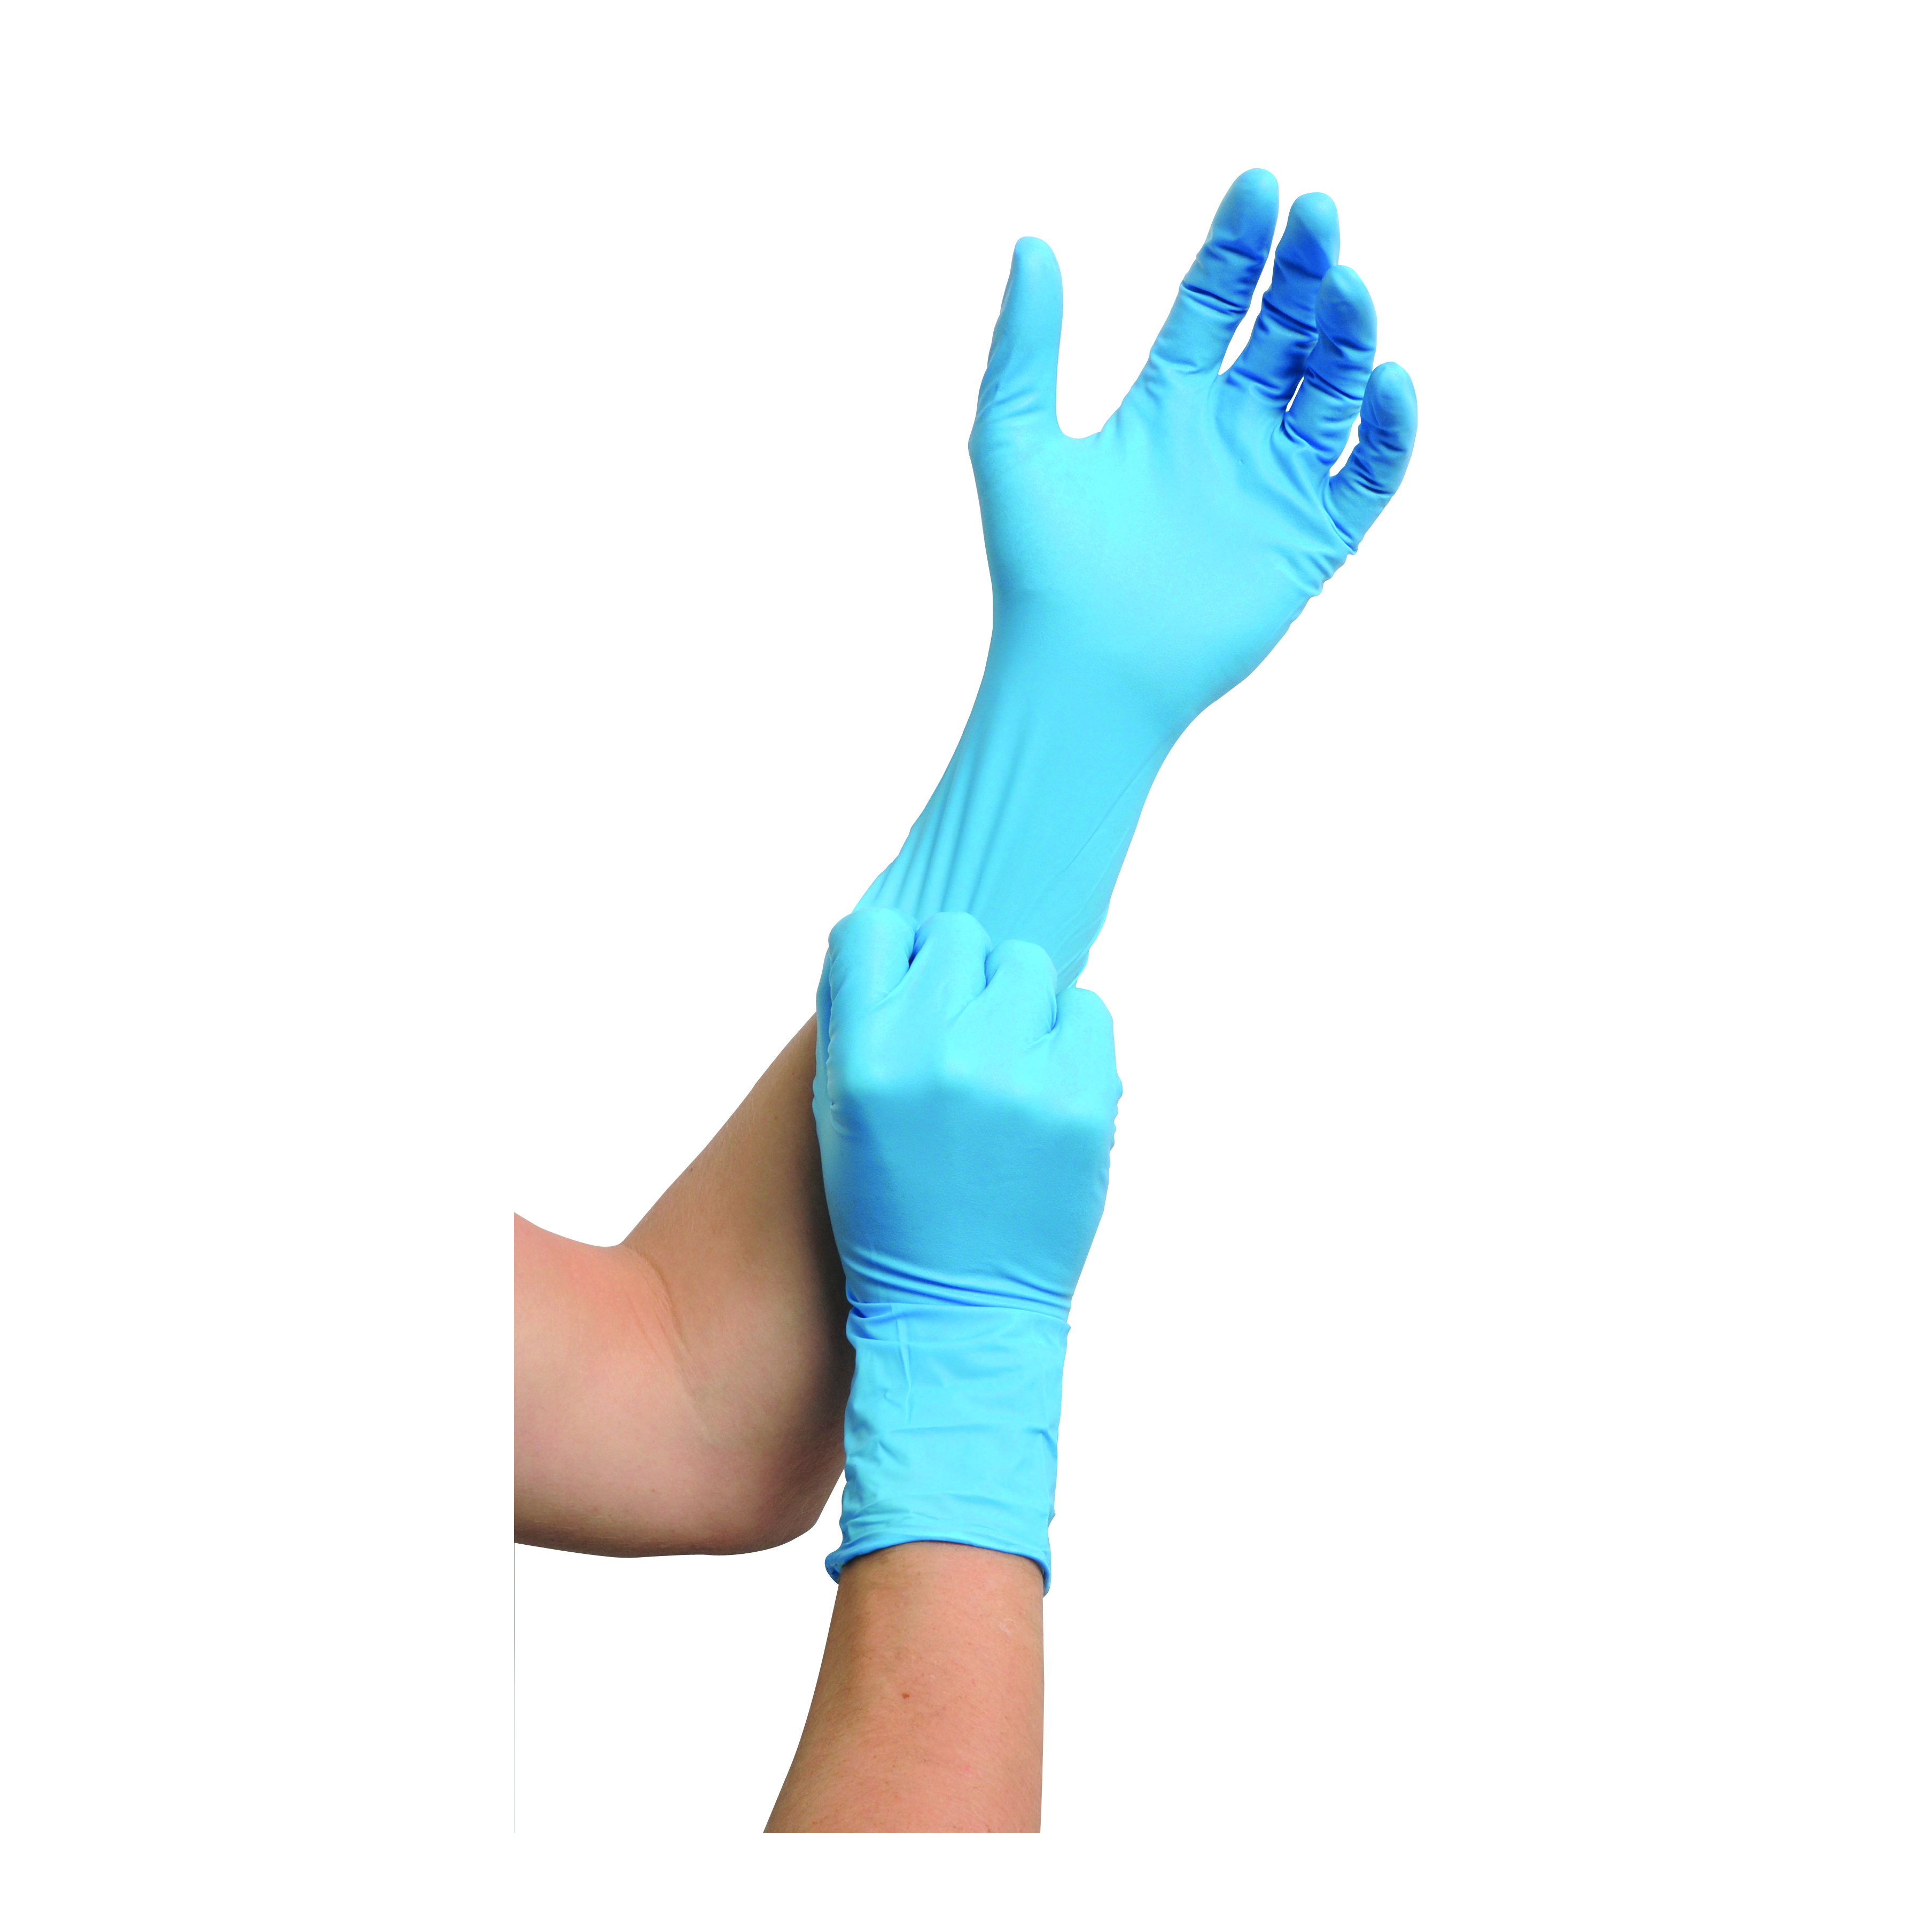 MaiMed nitril ST PF Einmalchemikalienschutzhandschuhe, Gr. L, blau, ungepudert